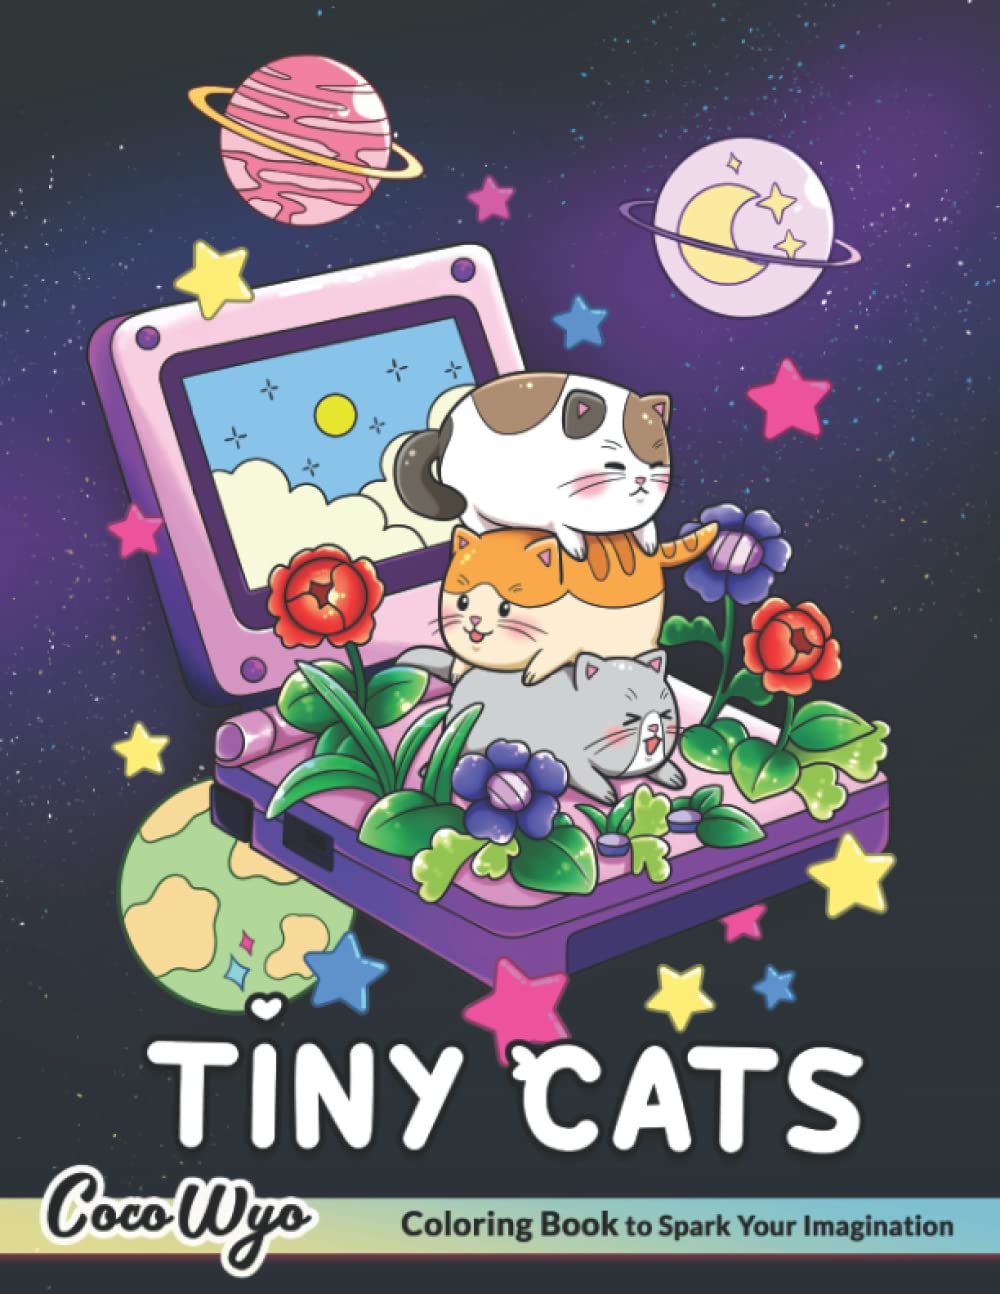 الكمبيوتر المحمول الأرجواني الكرتوني مفتوح ليكشف عن الزهور والقطط.  تطفو الكواكب في كل مكان وأحرف بيضاء مكتوب عليها Tiny Cats.